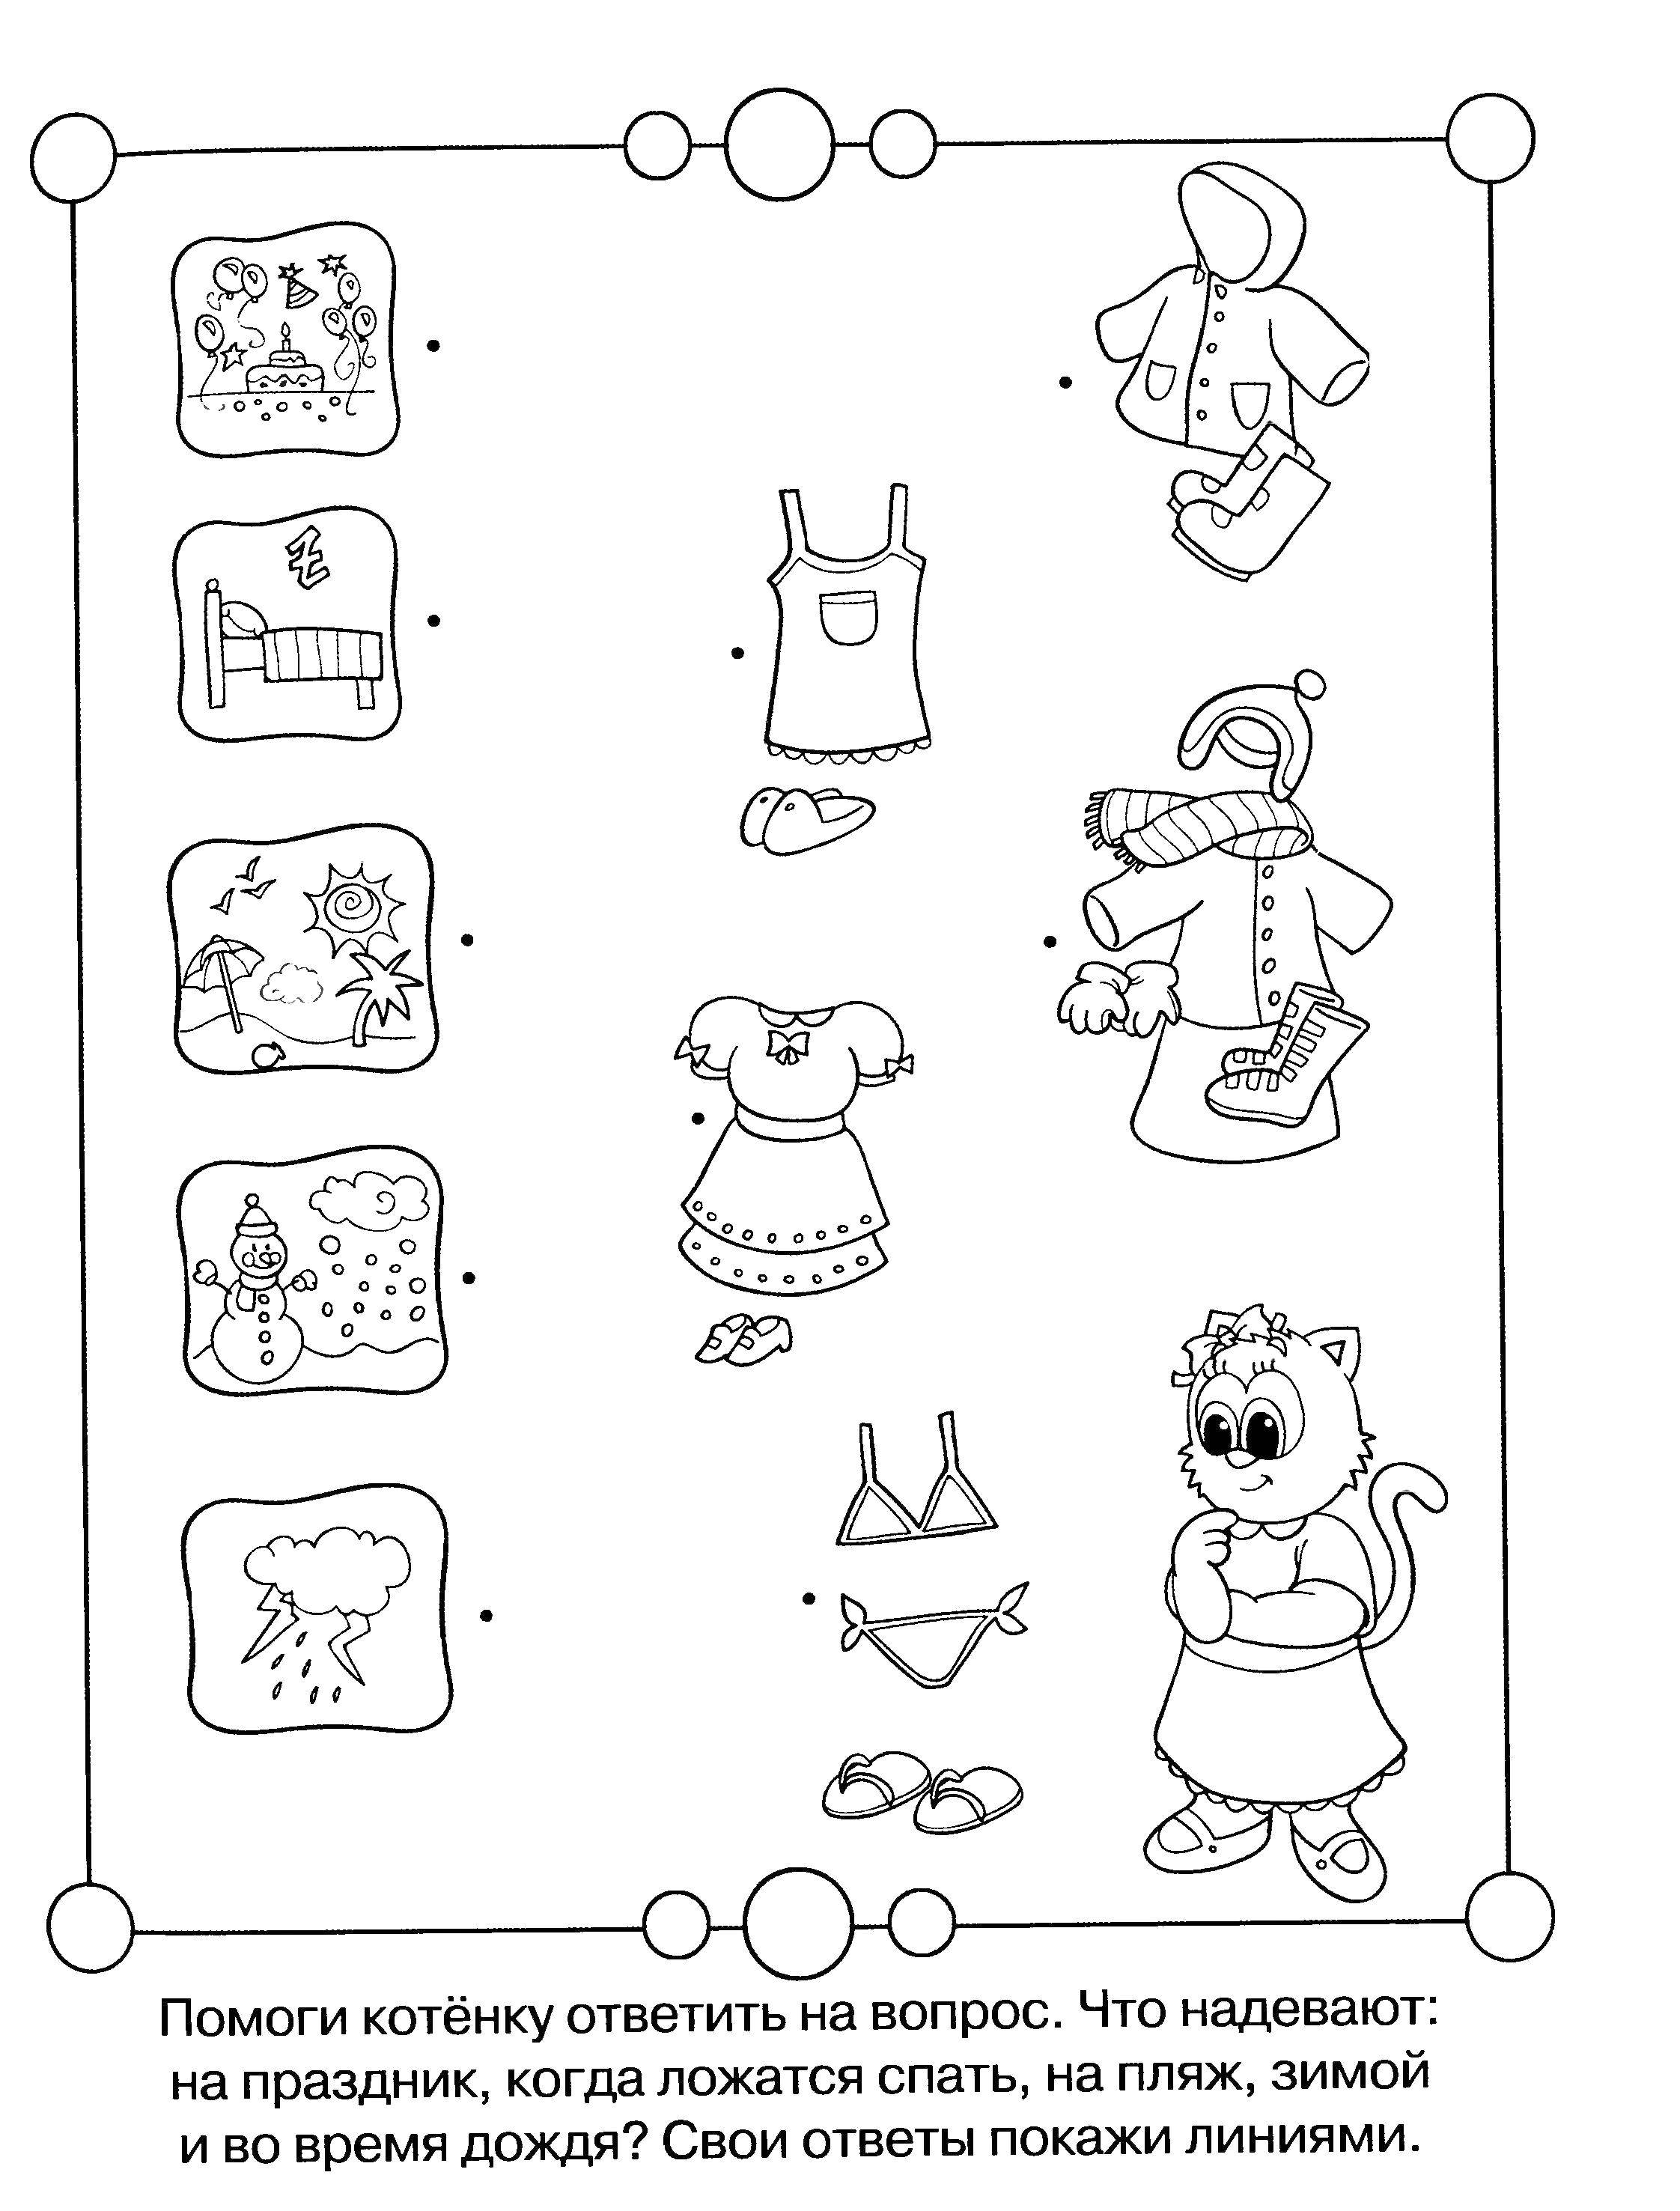 Задания на праздник детям. Одежда задания для дошкольников. Логические раскраски для детей. Задания головоломки для дошкольников. Раскраски для логики для детей.